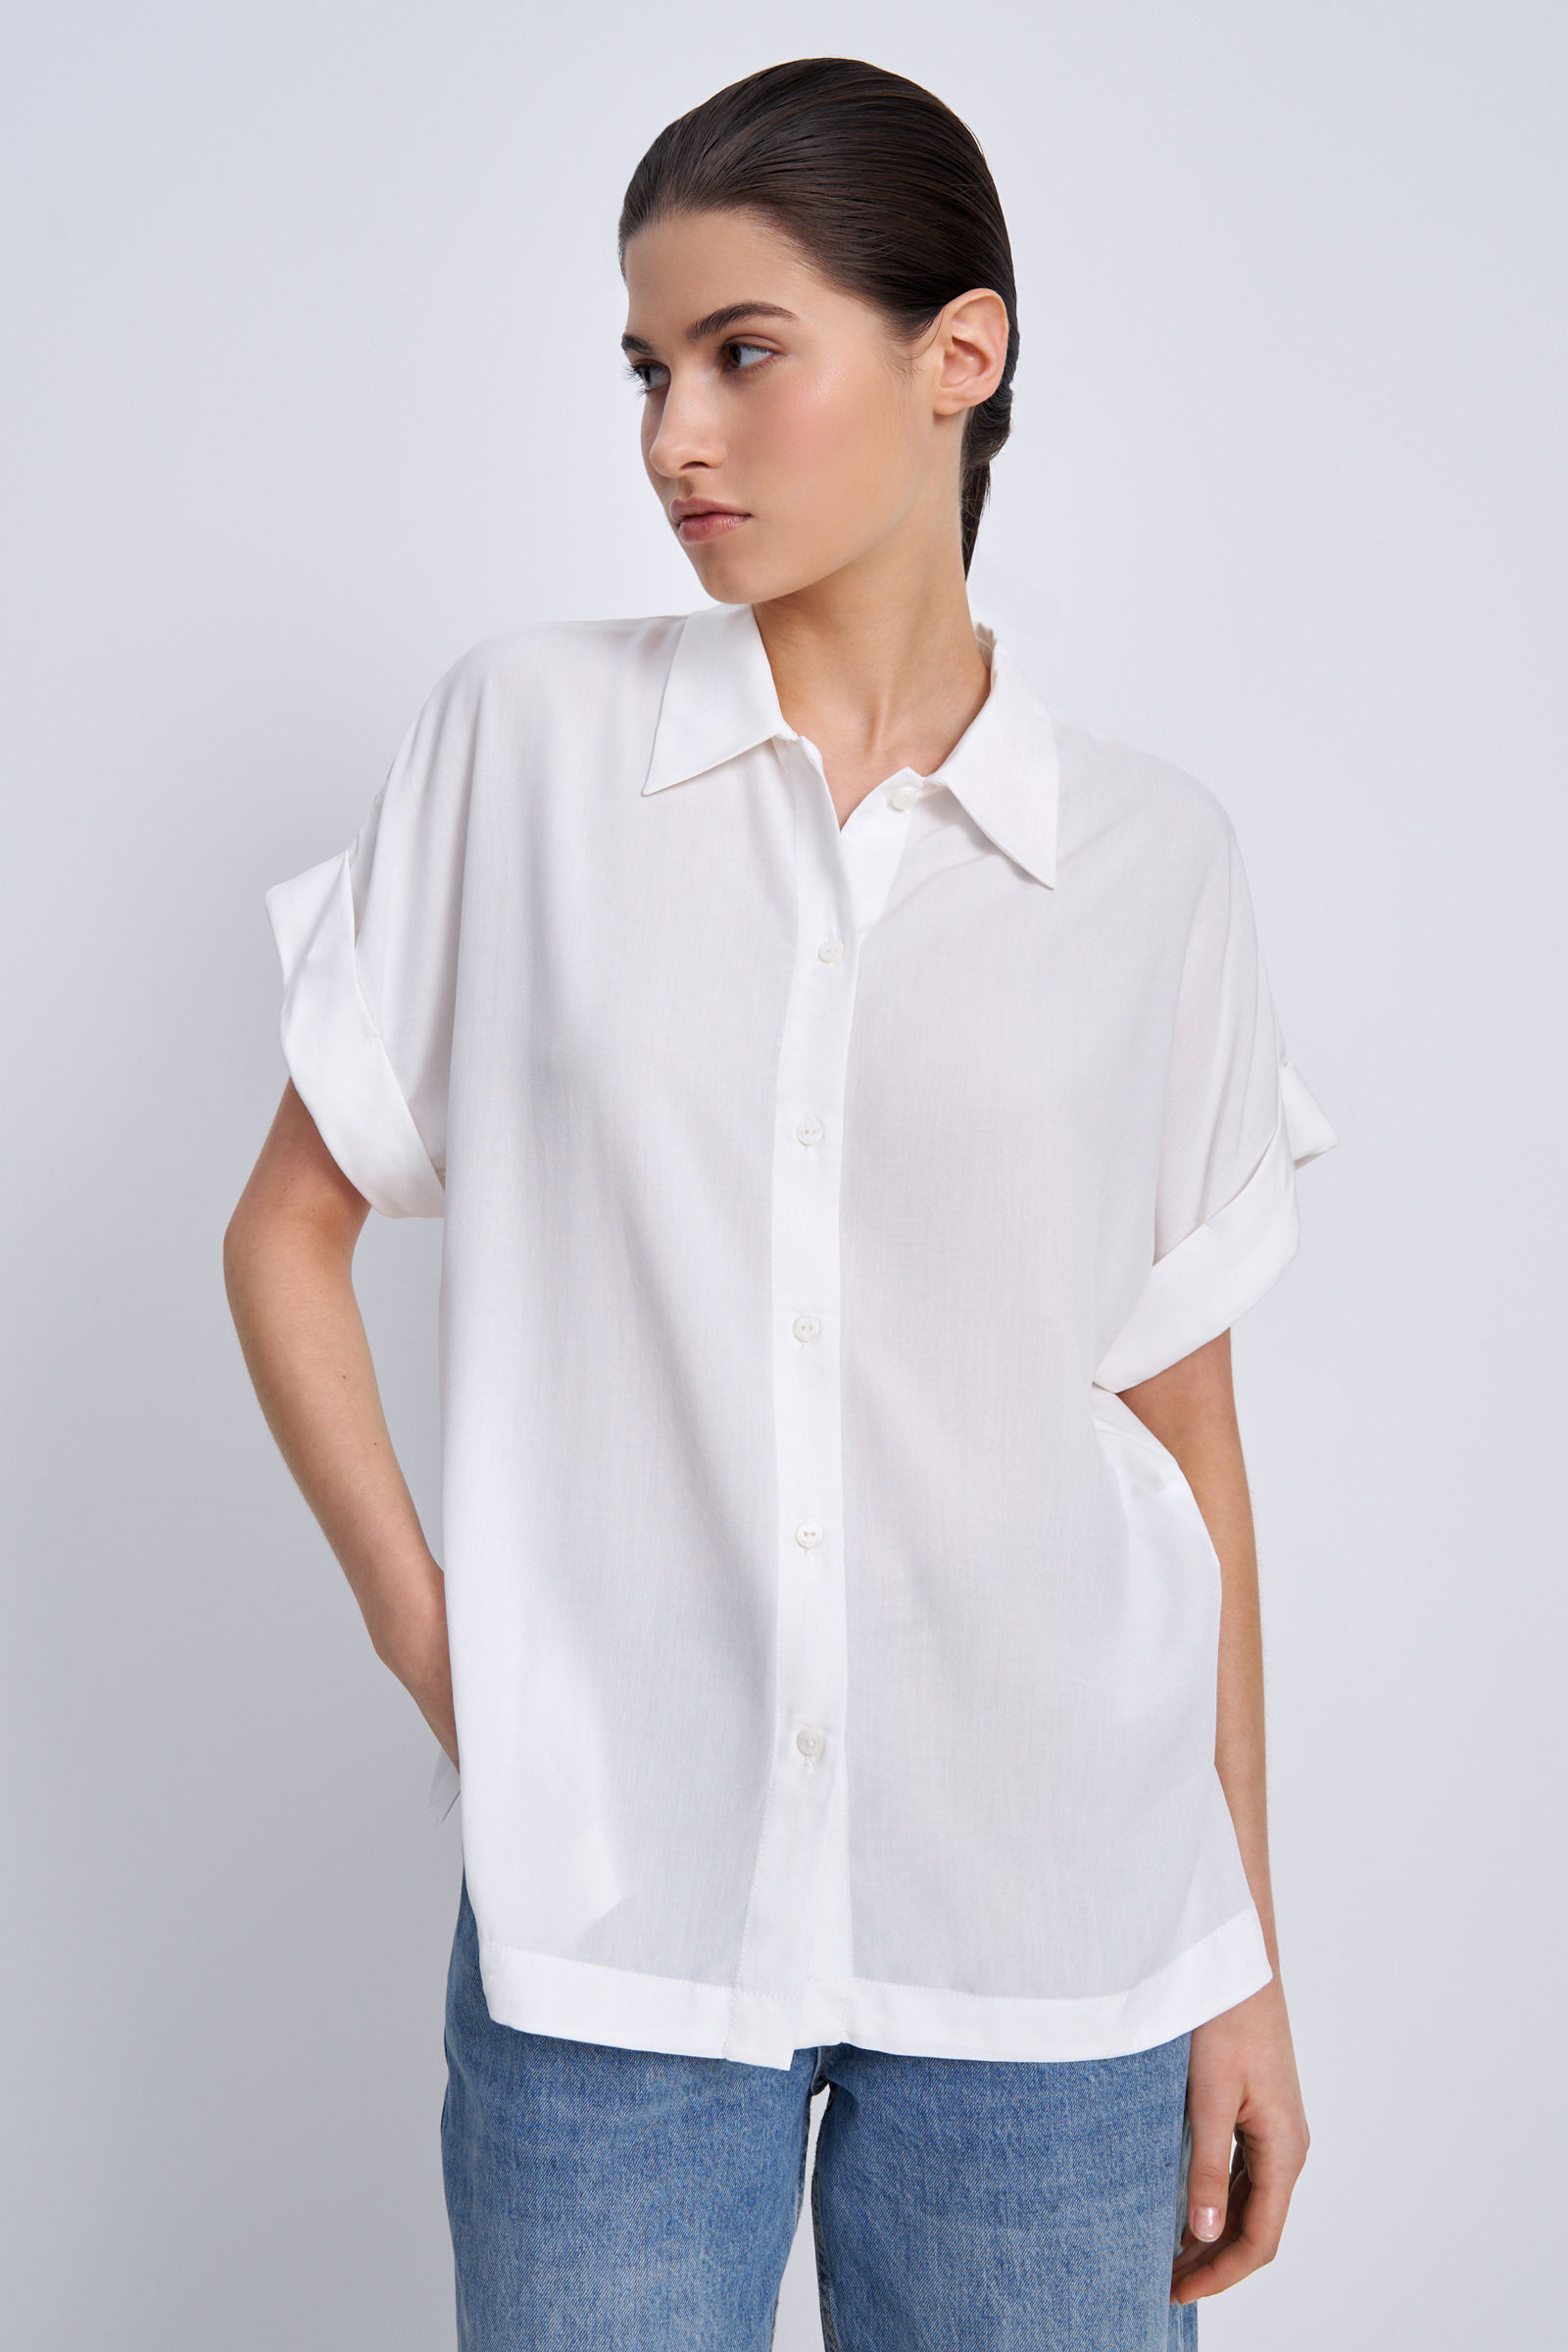 Рубашка женская Finn Flare BAS-10041 белая 2XL